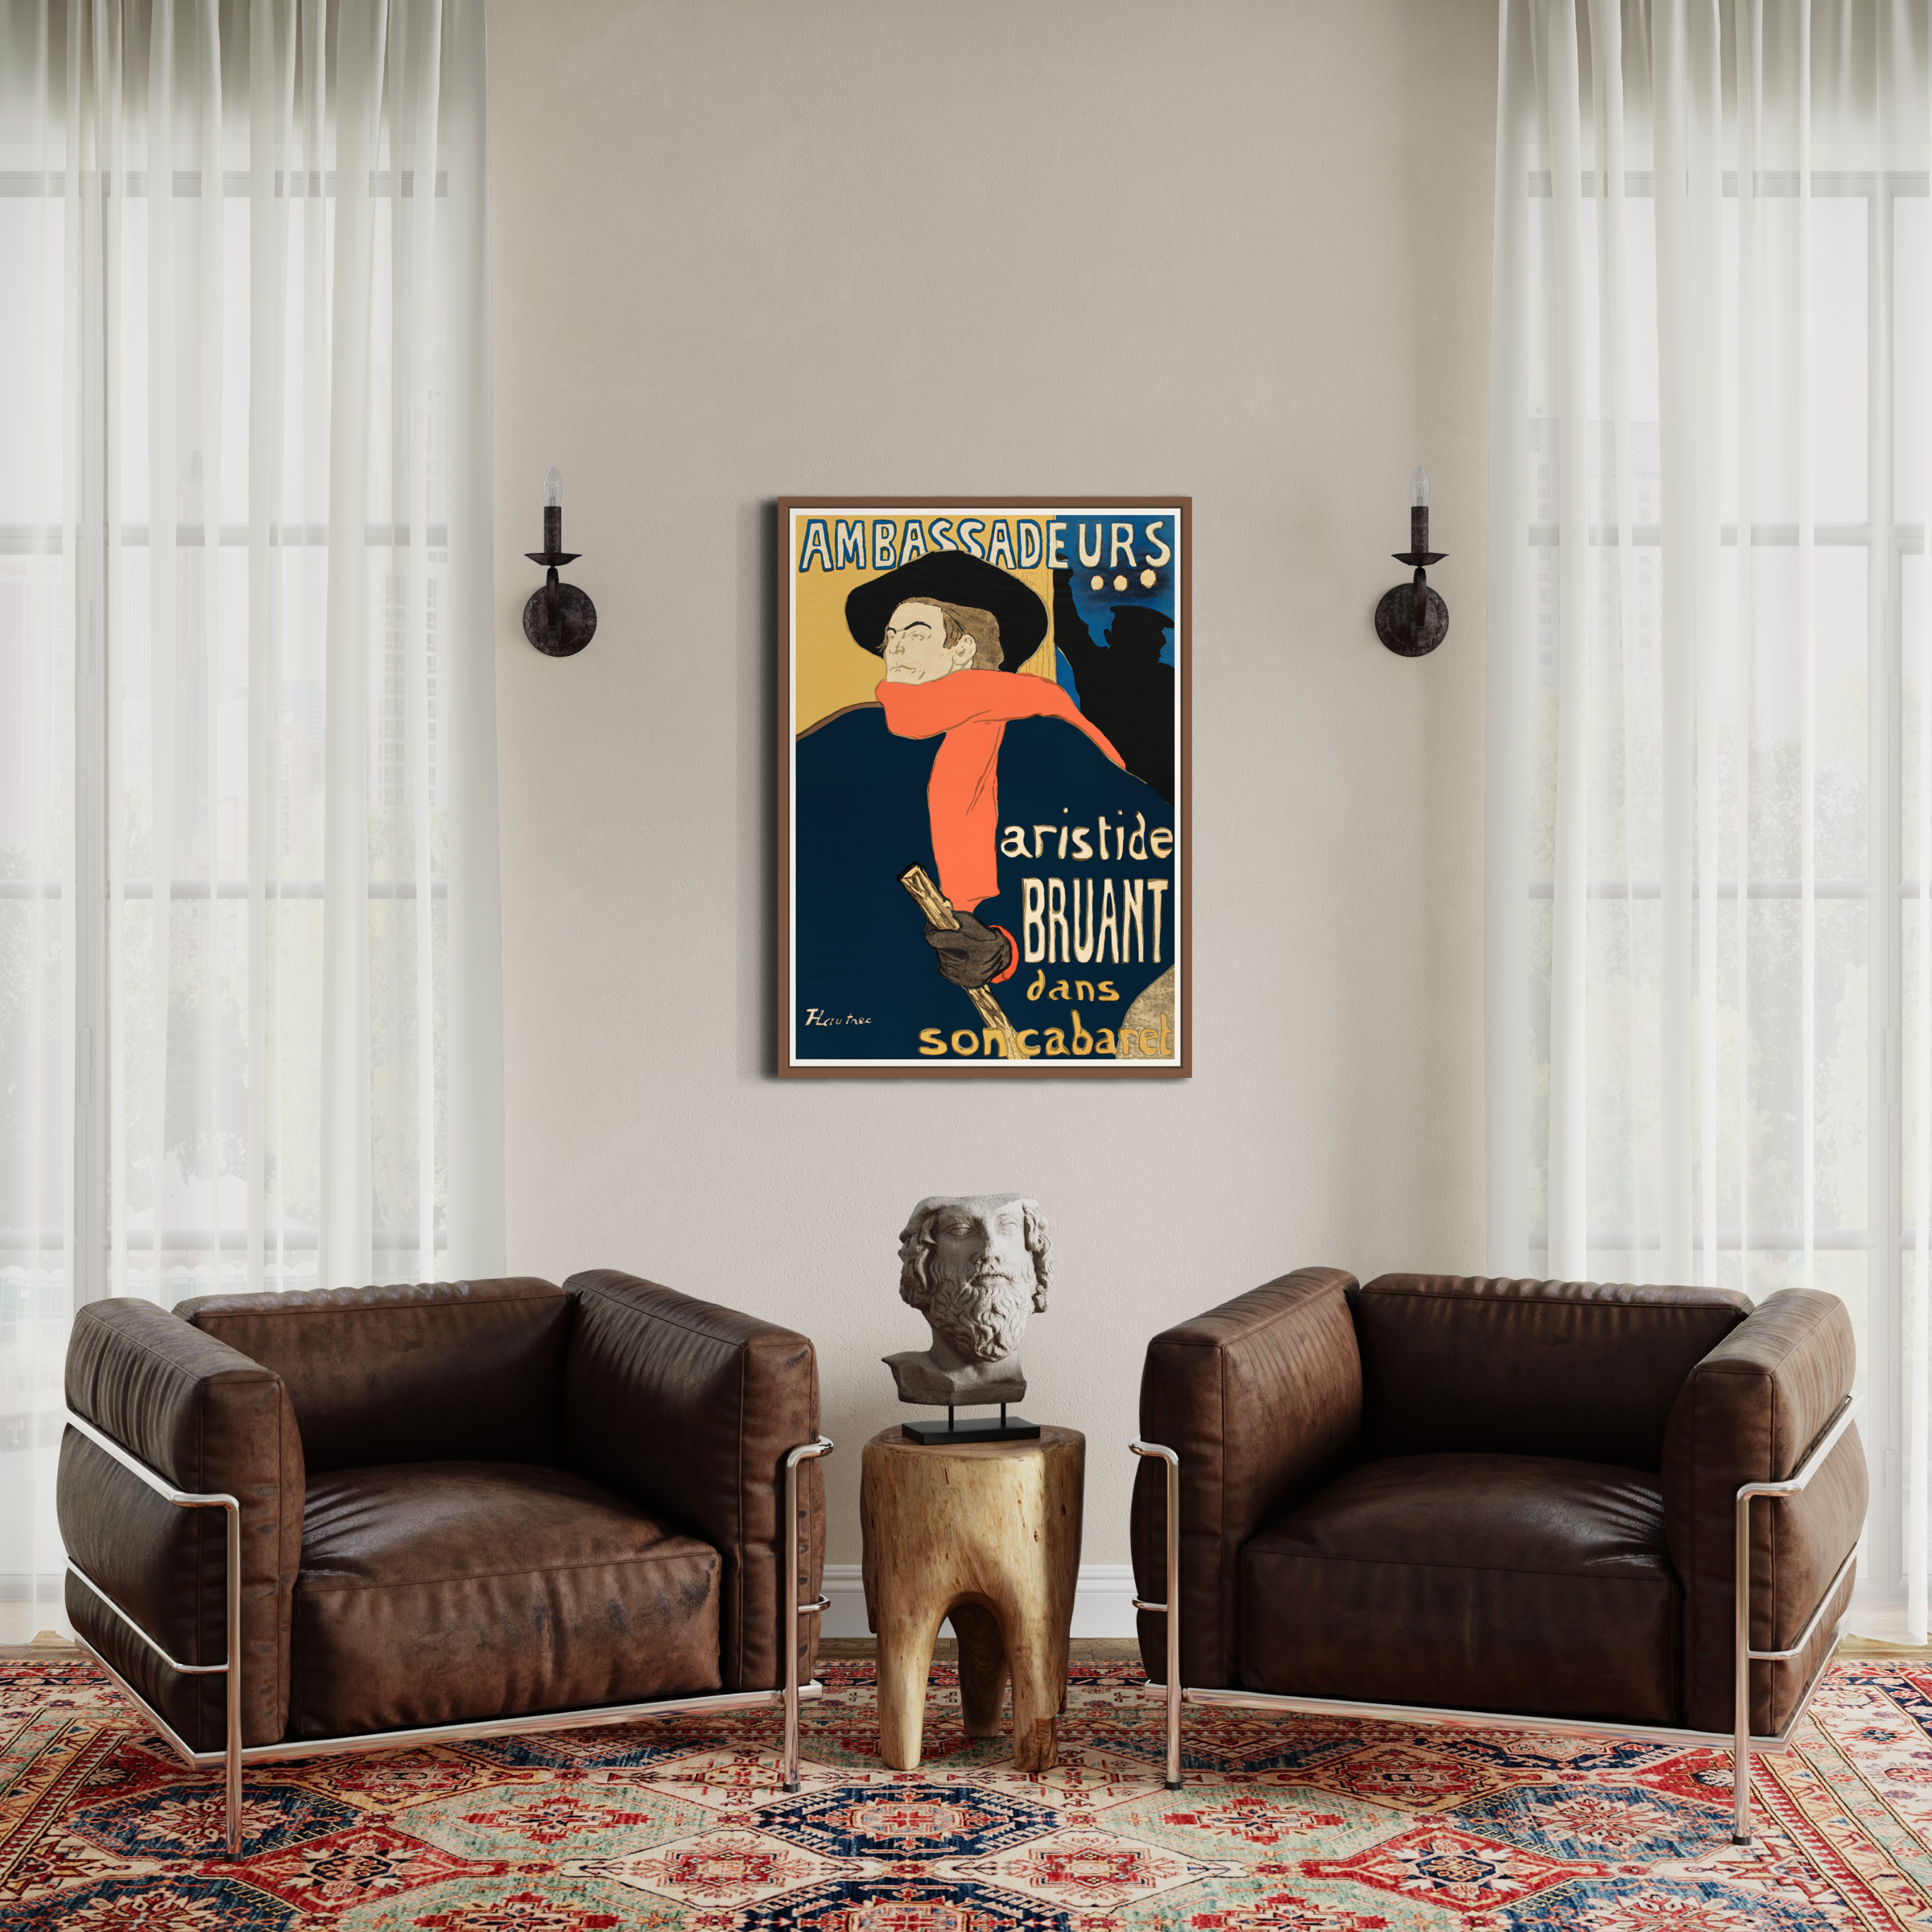 Henri de Toulouse-Lautrec Poster - Ambassadeurs Aristide Bruant Dans Son Cabaret